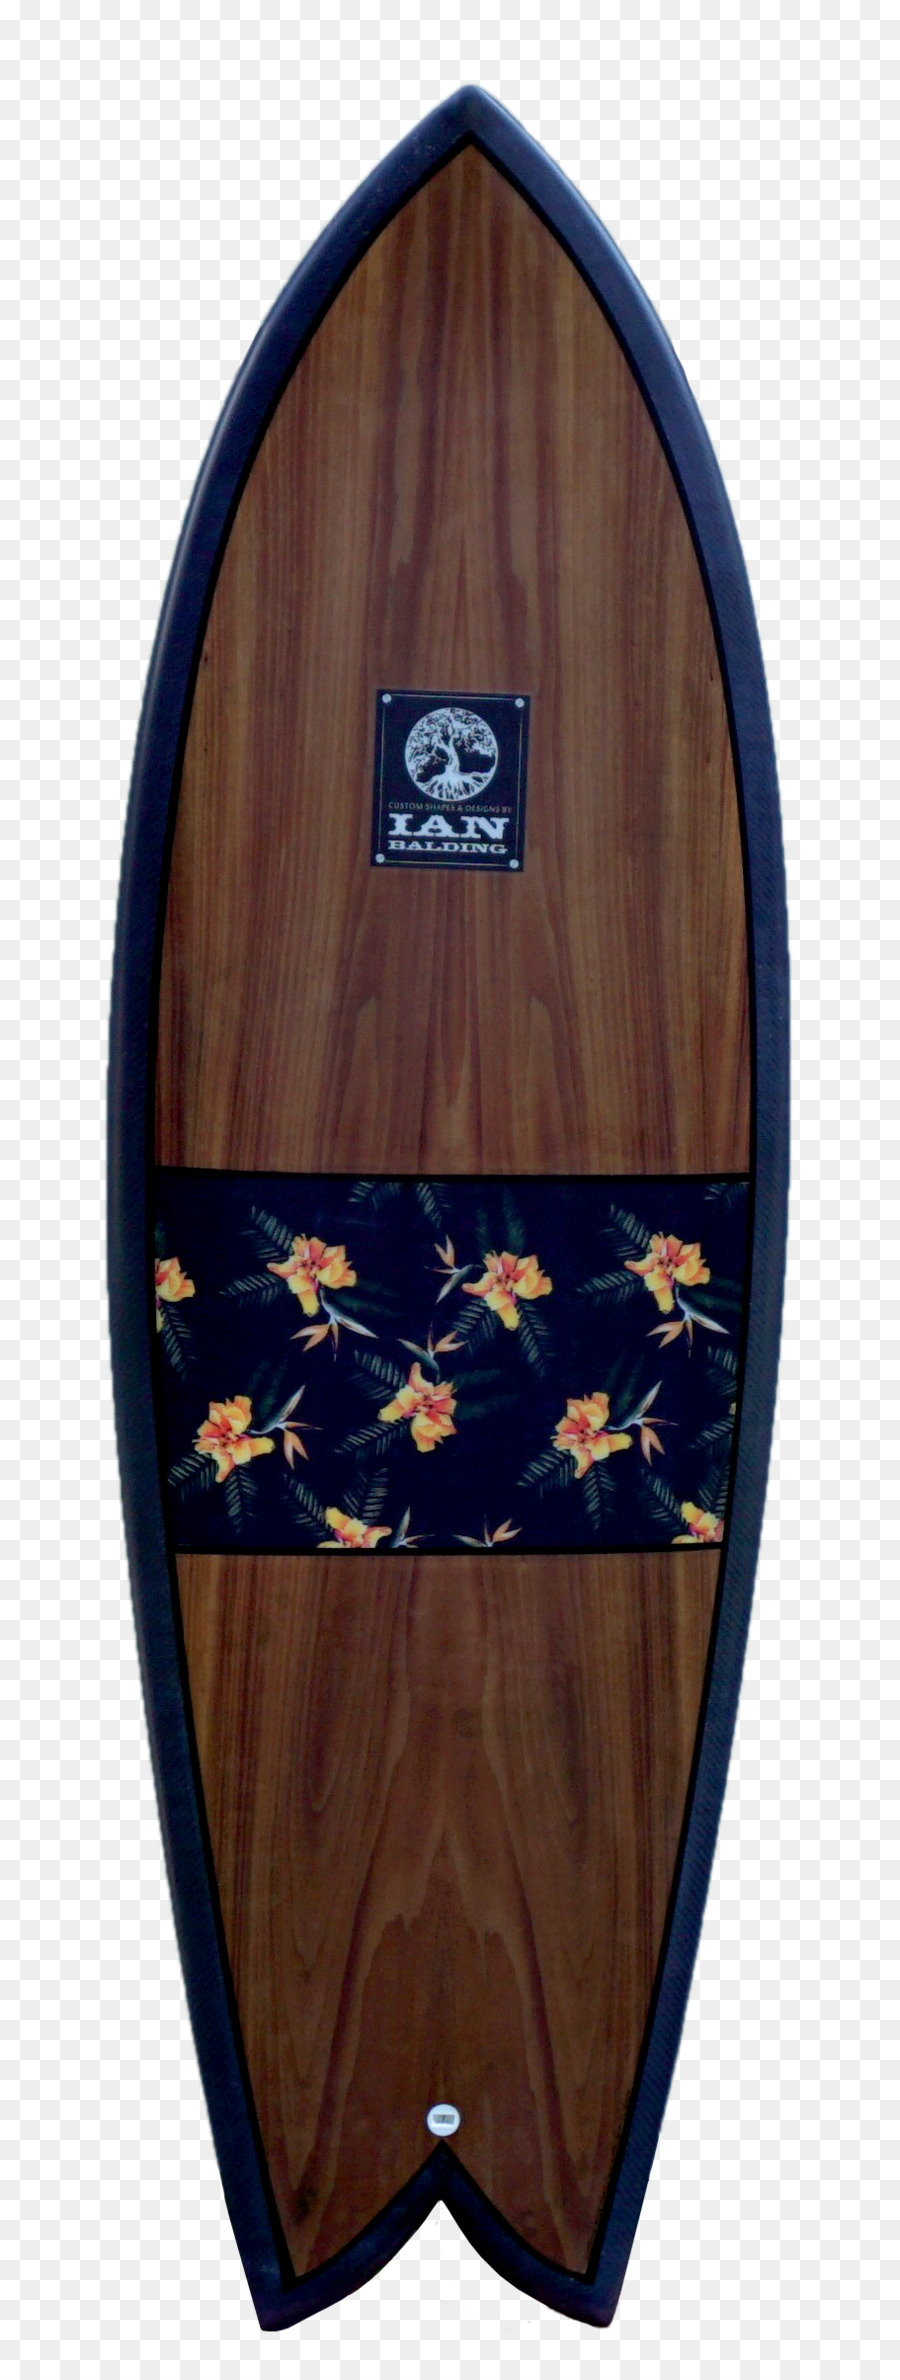 Tavola da surf Pinne Longboard Shortboard Standup paddleboarding - tavola da surf